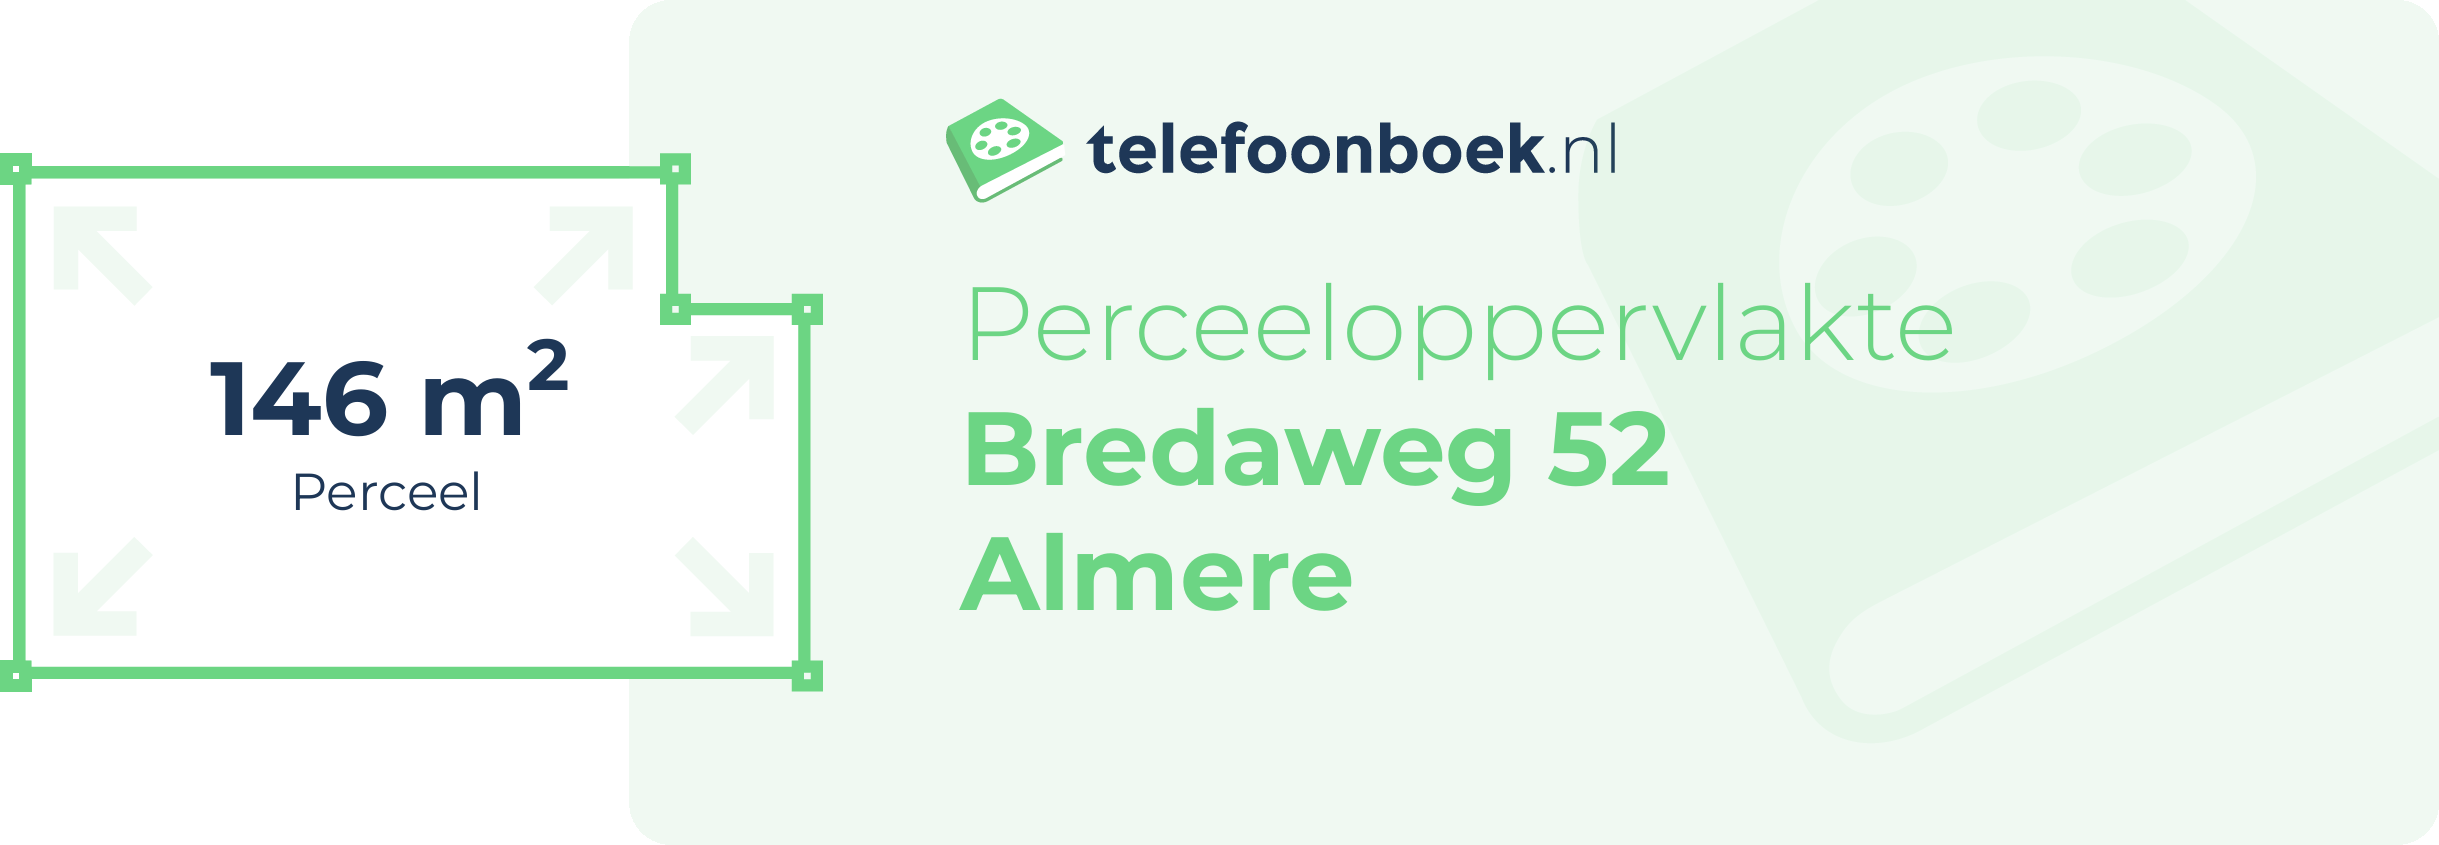 Perceeloppervlakte Bredaweg 52 Almere